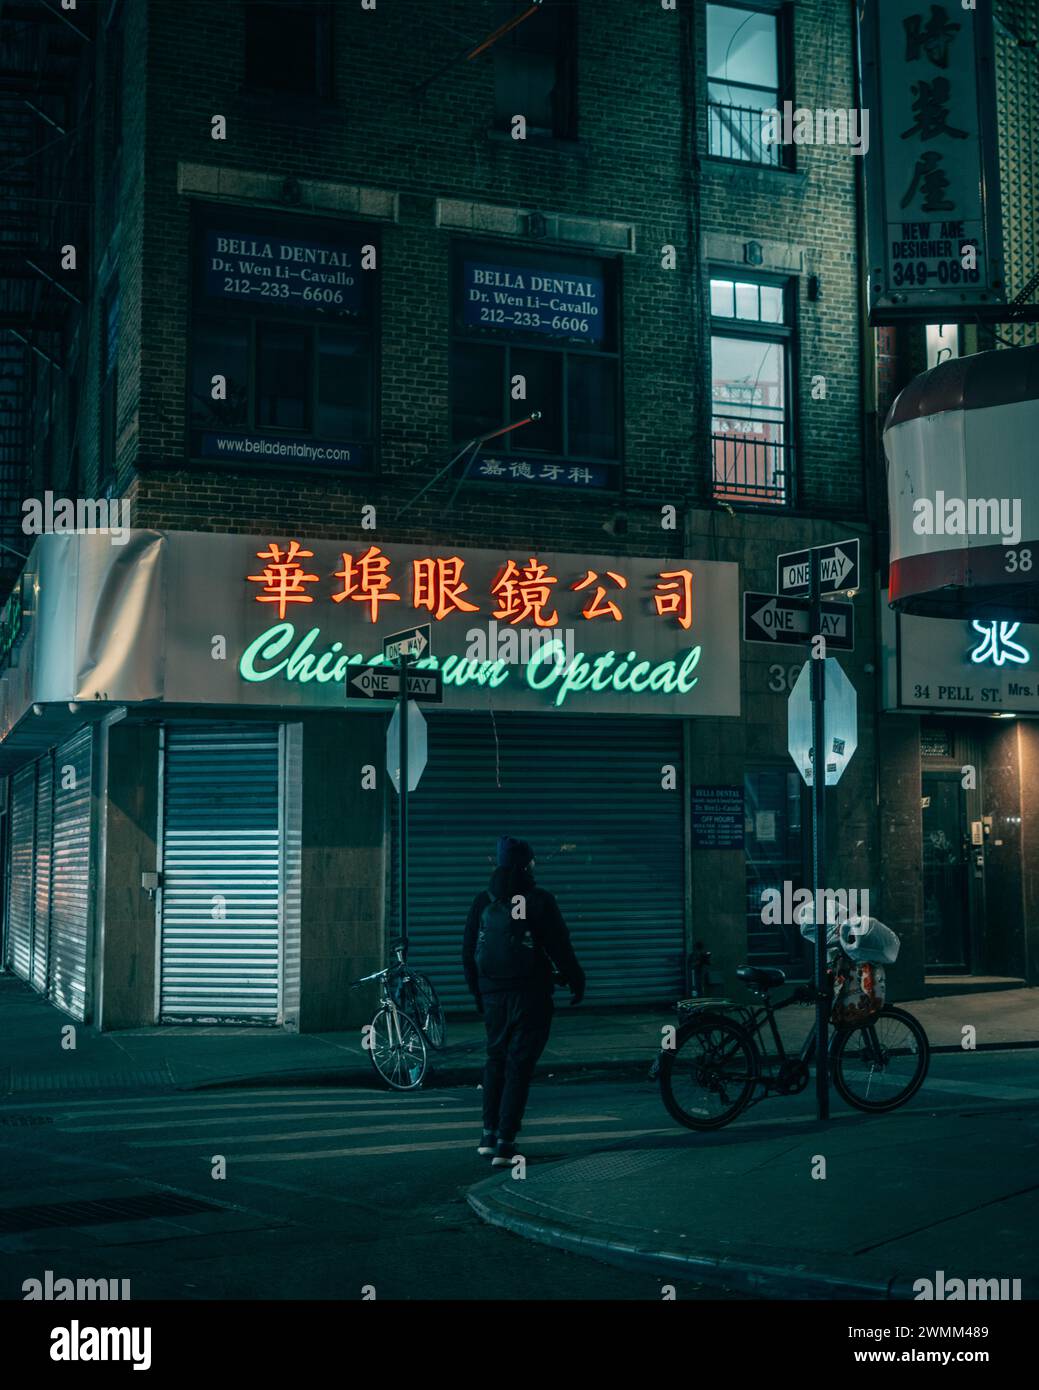 Chinatown Optical sign at night in Chinatown, Manhattan, New York City Stock Photo